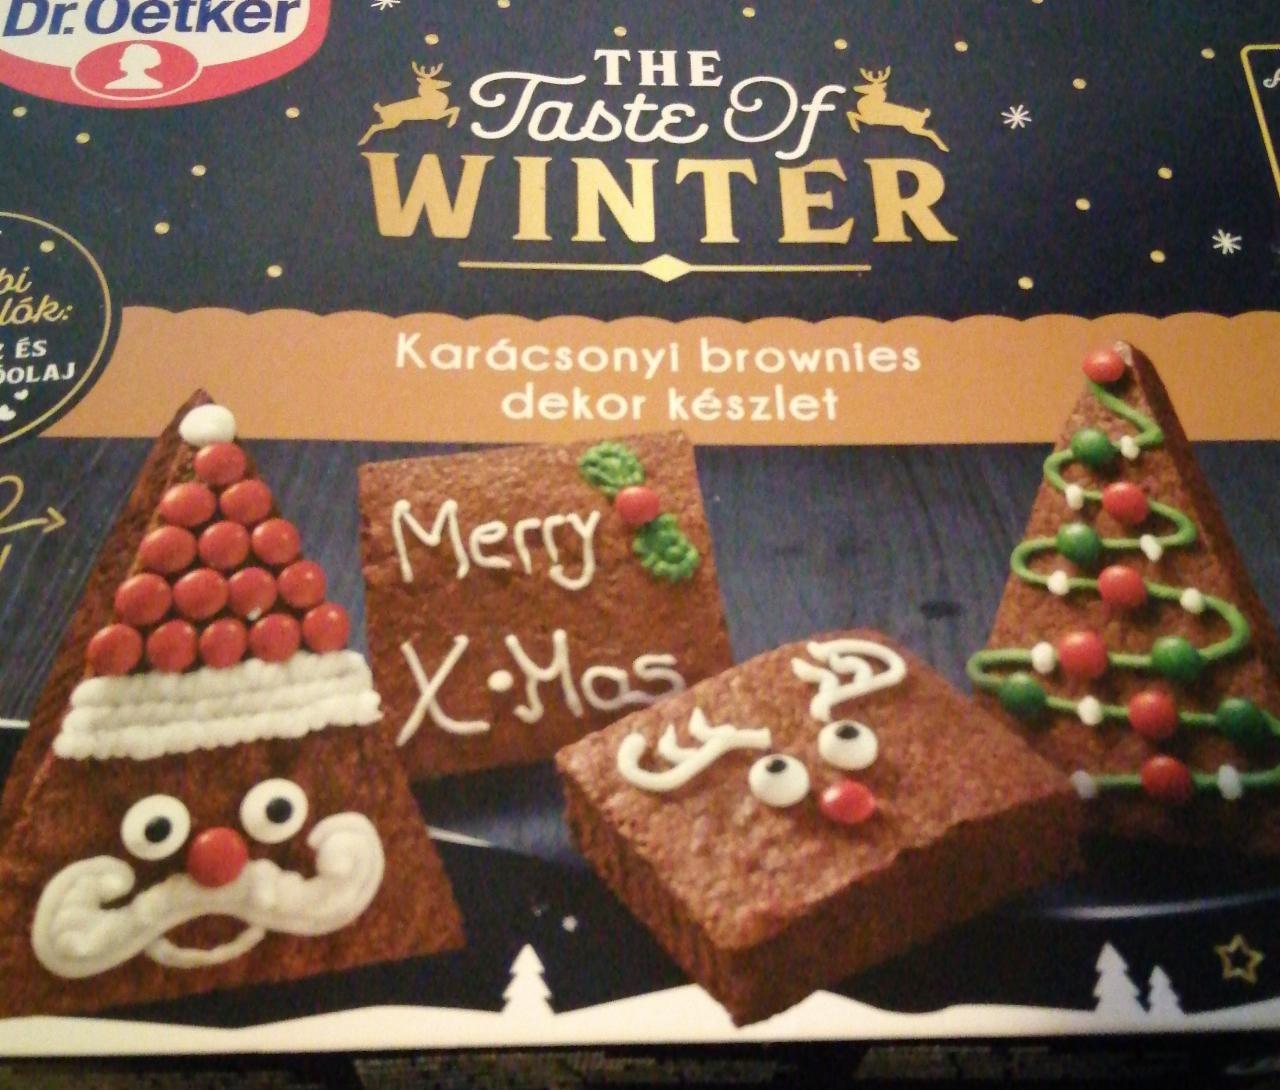 Képek - Karácsonyi brownies dekor készlet Dr.Oetker